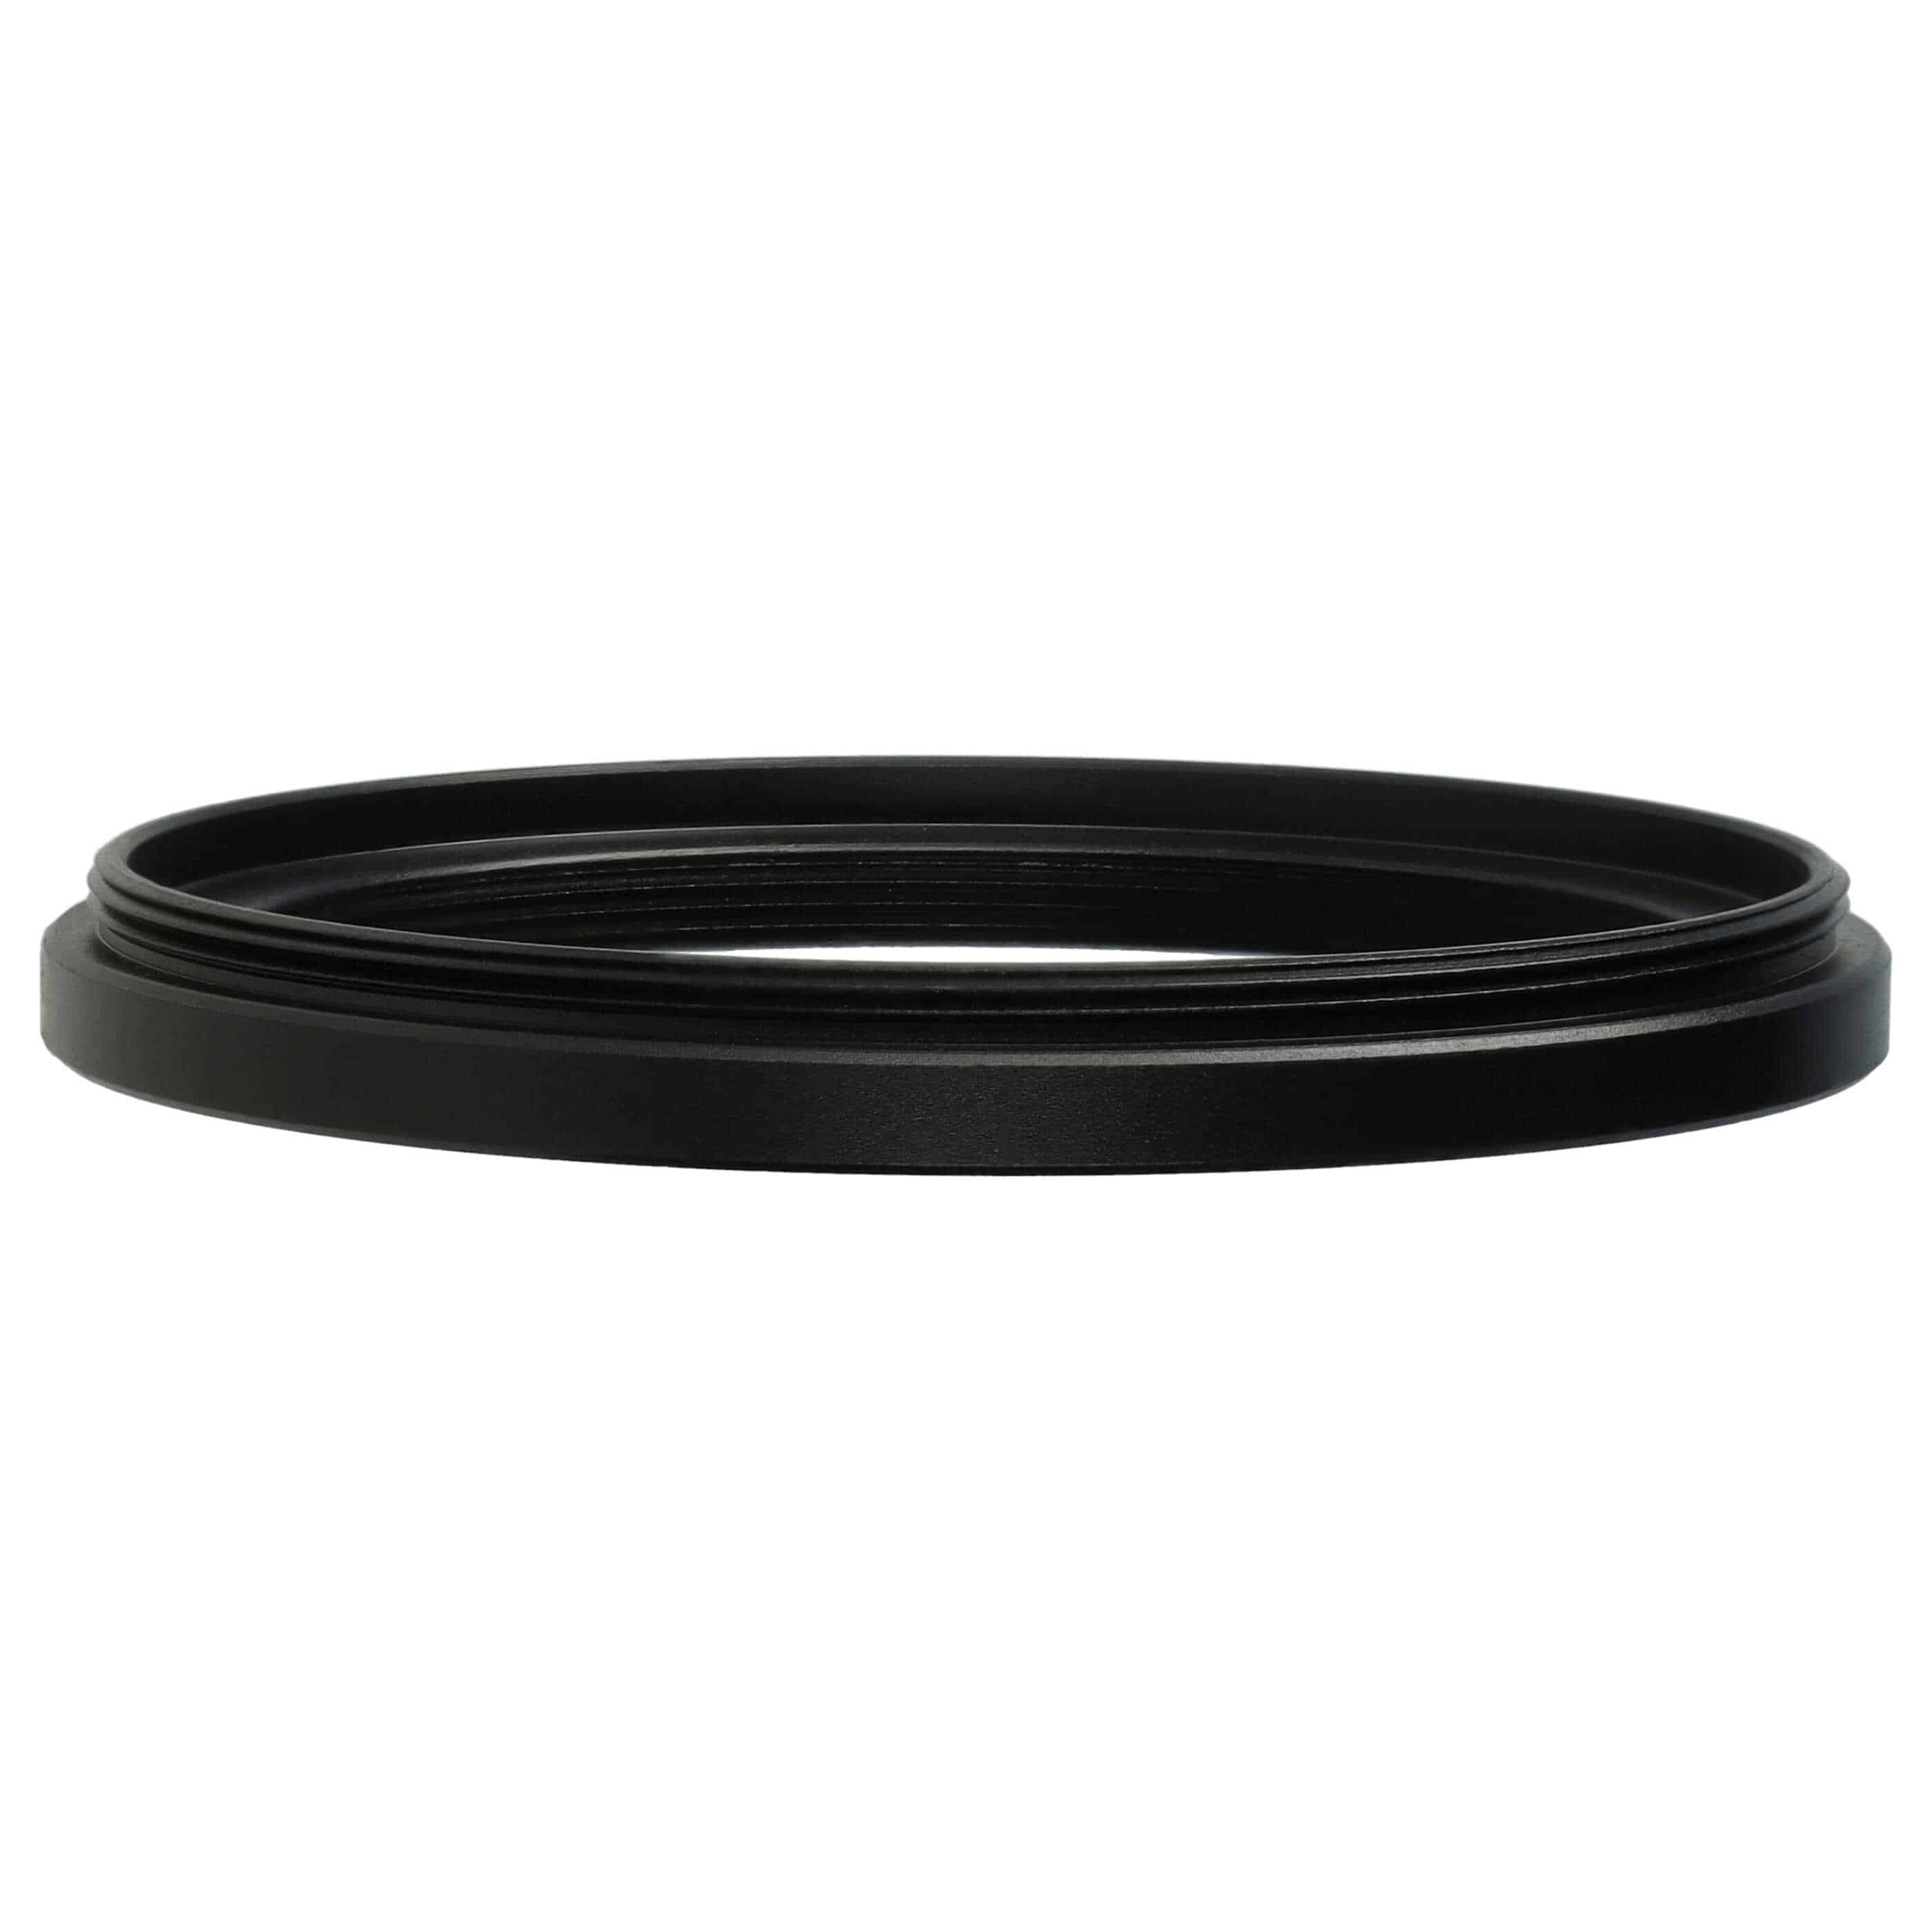 Anello adattatore step-down da 58 mm a 49 mm per obiettivo fotocamera - Adattatore filtro, metallo, nero